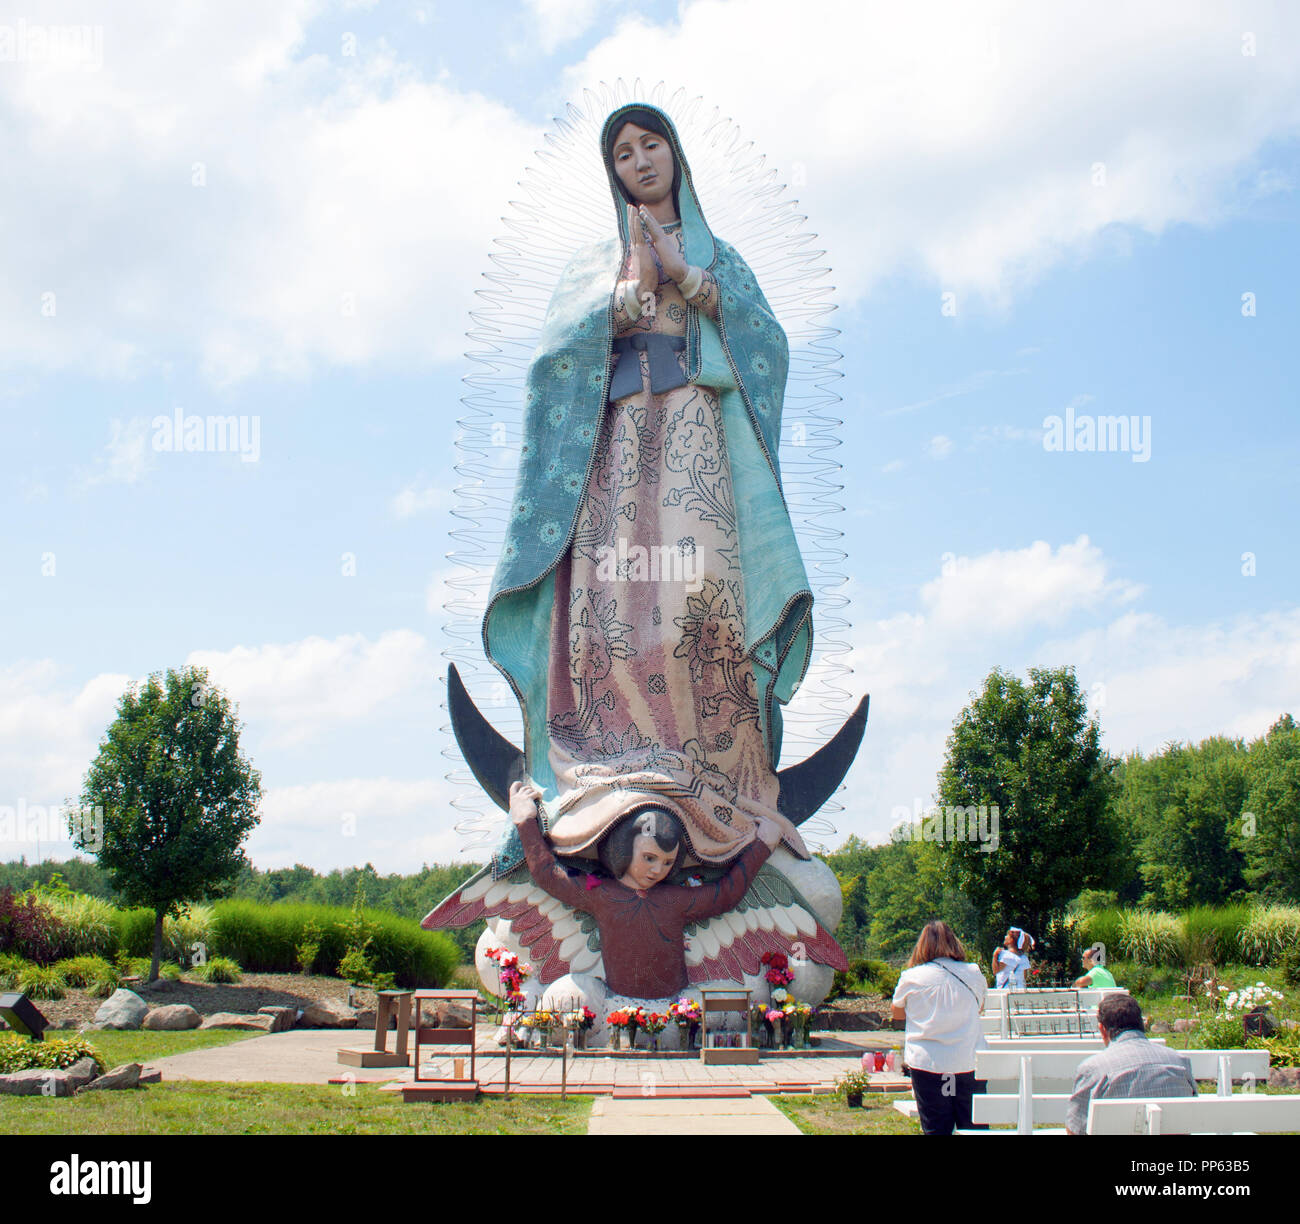 Mas alto del mundo Nuestra Señora de Guadalupe en Windsor, Ohio Foto de stock